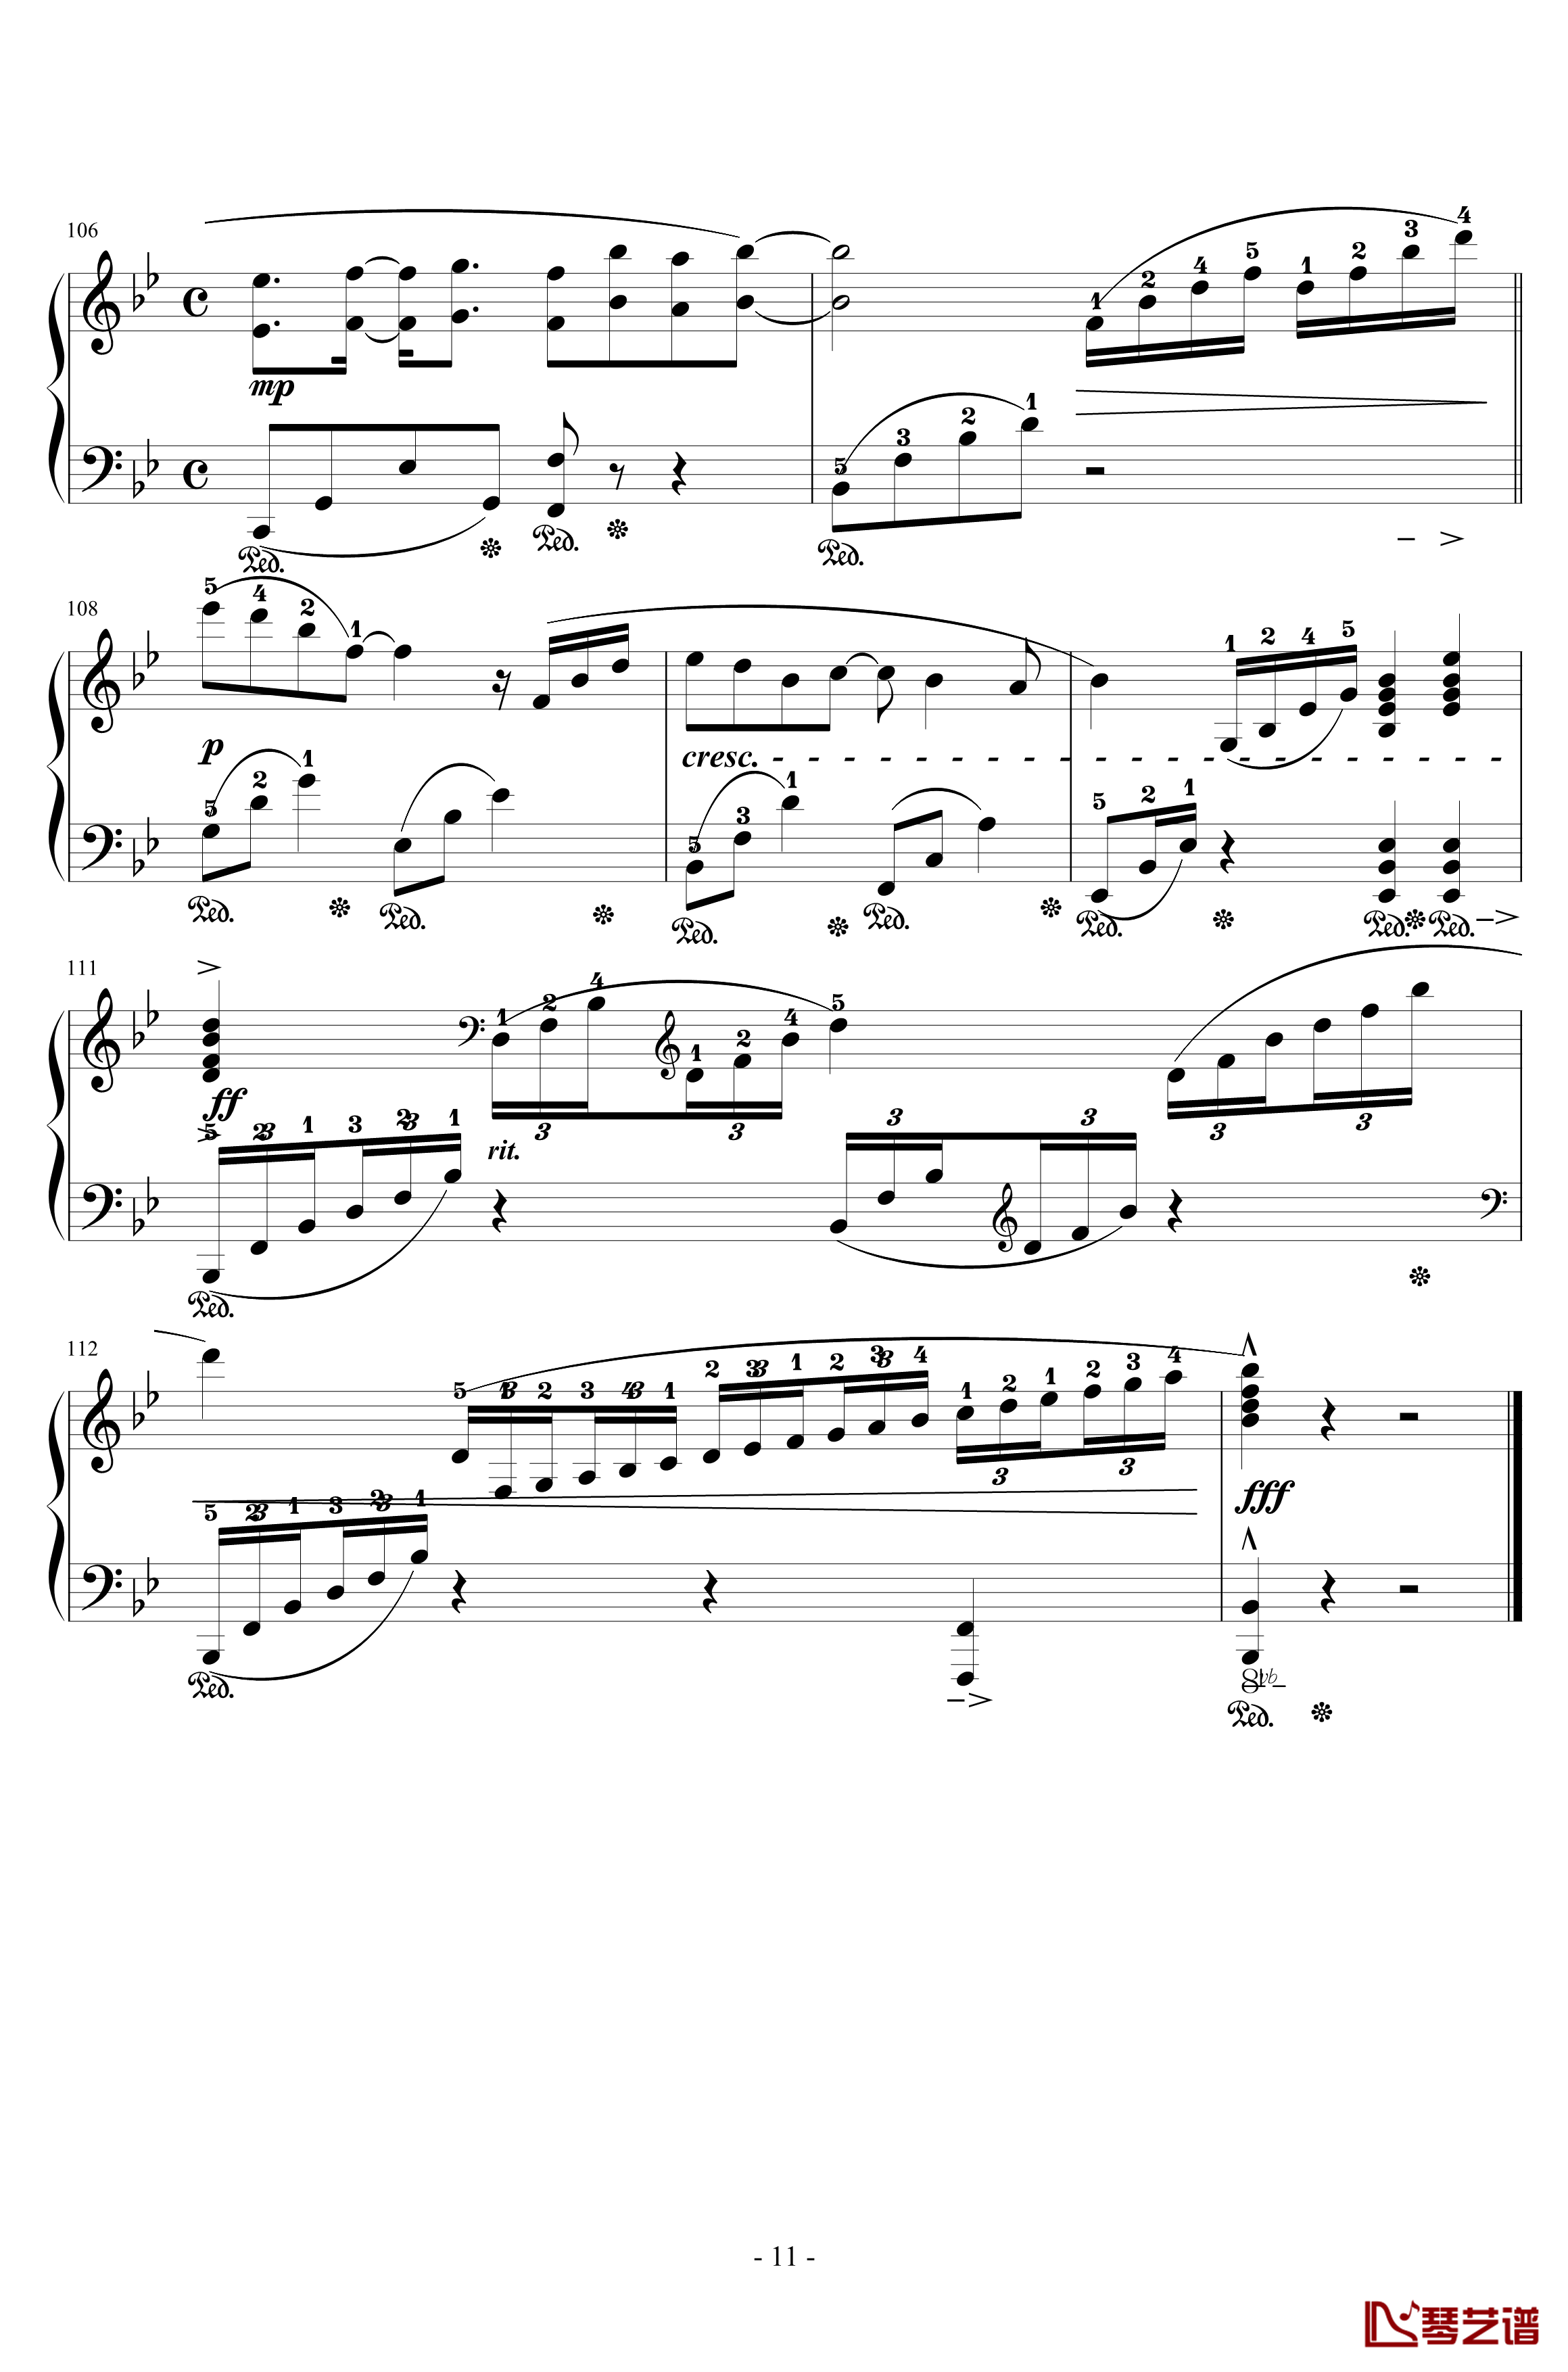 樱之雨钢琴谱-交响乐版-初音未来